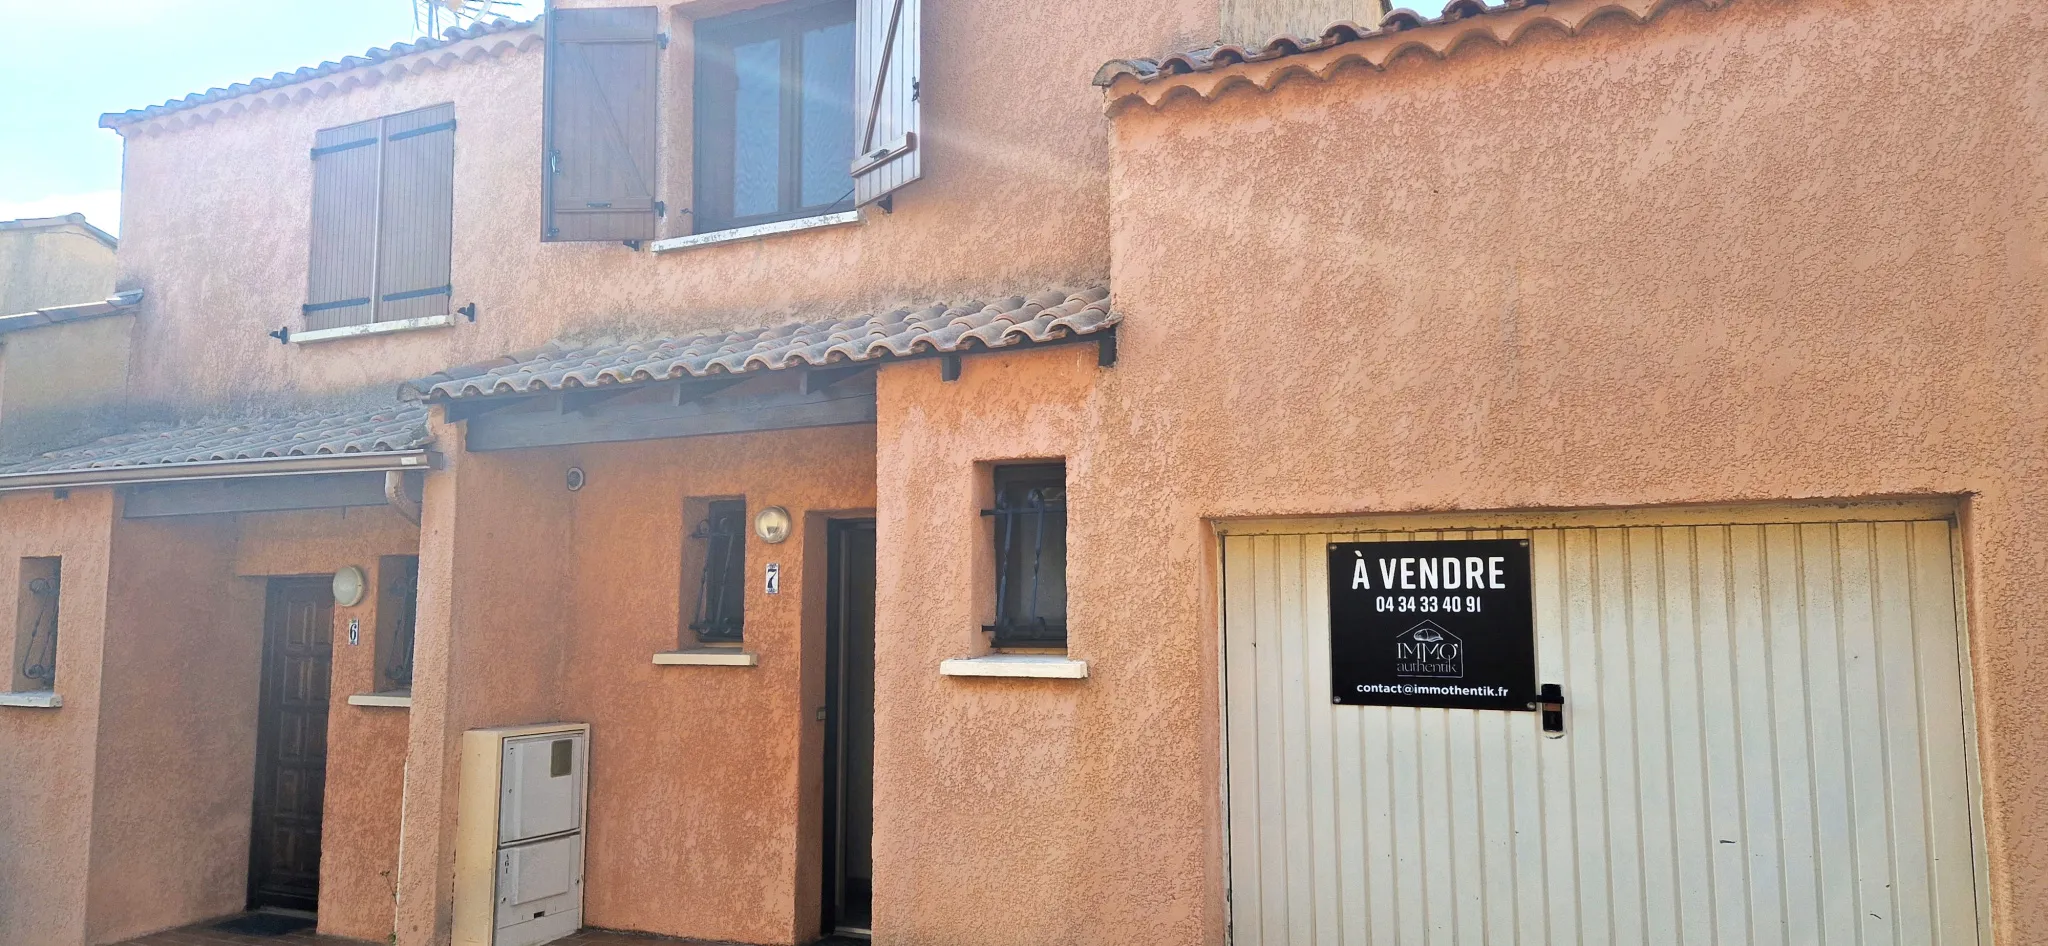 Maison en vente au Grau D'Agde, 3 chambres, terrasse, garage 